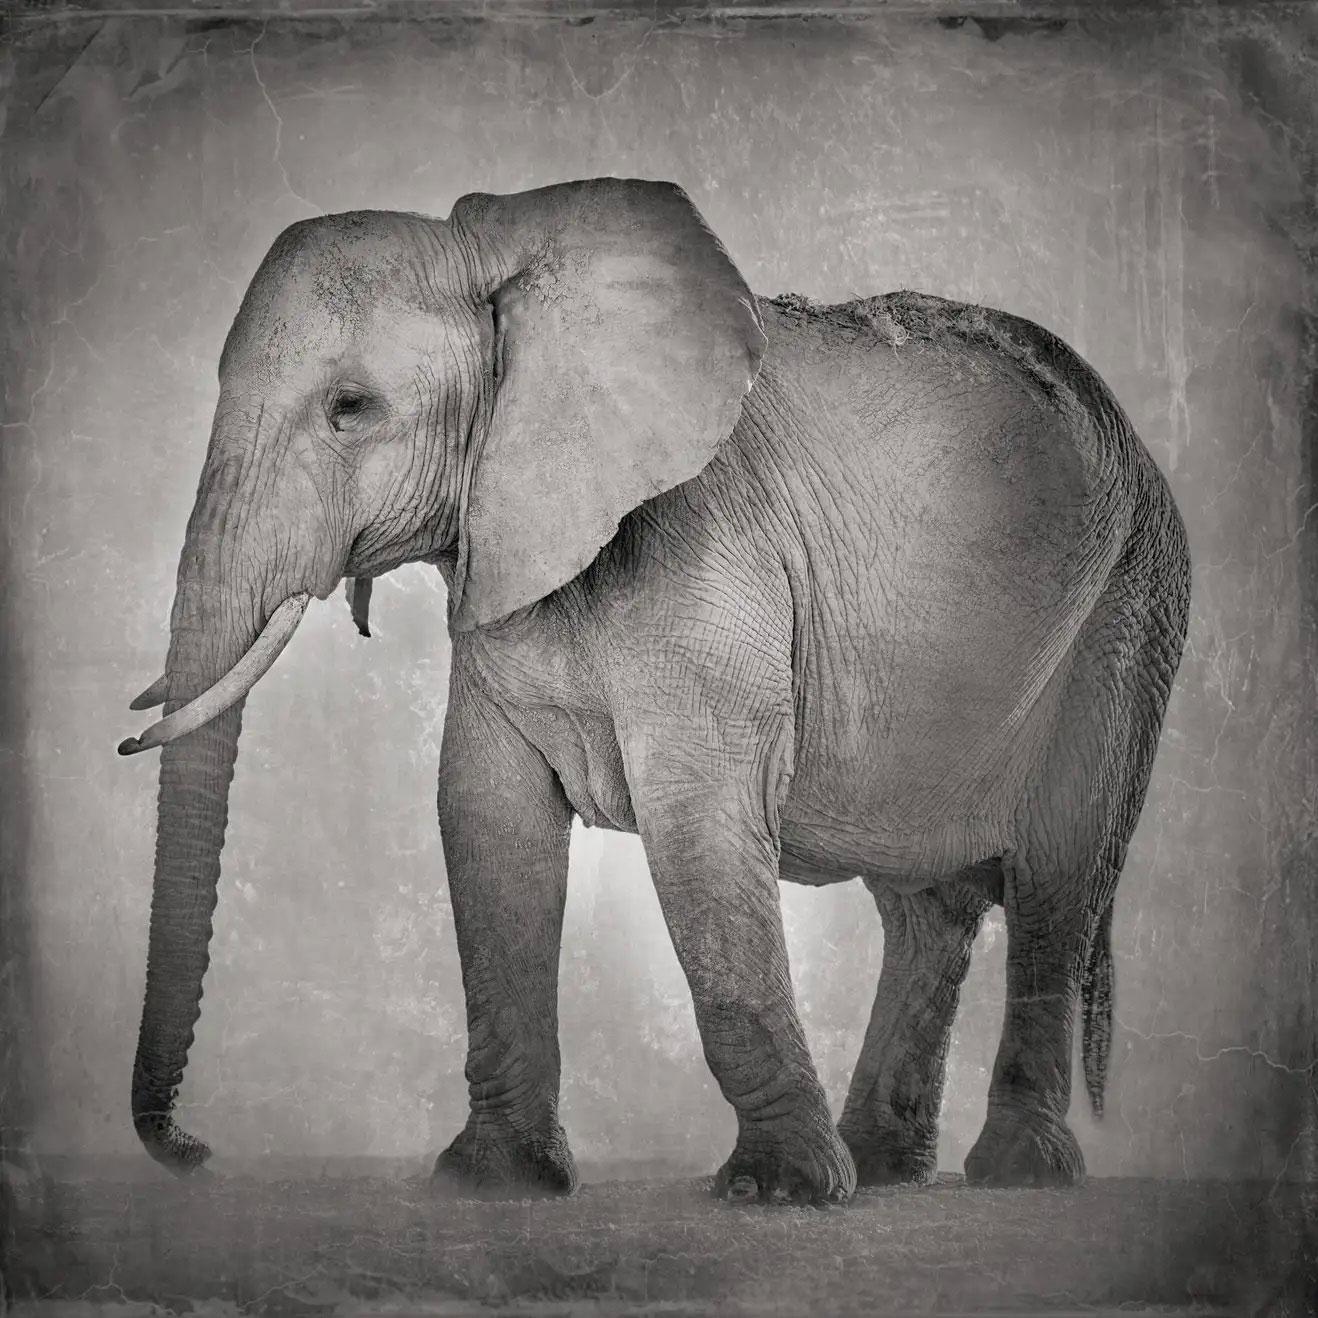 David Burdeny – ruhender Elefant, Amboseli, Kenia, Afrika (BW-Fotografie) 
Archivalischer Pigmentdruck
Signatur Label

Fragen Sie uns nach Einrahmungsmöglichkeiten.

